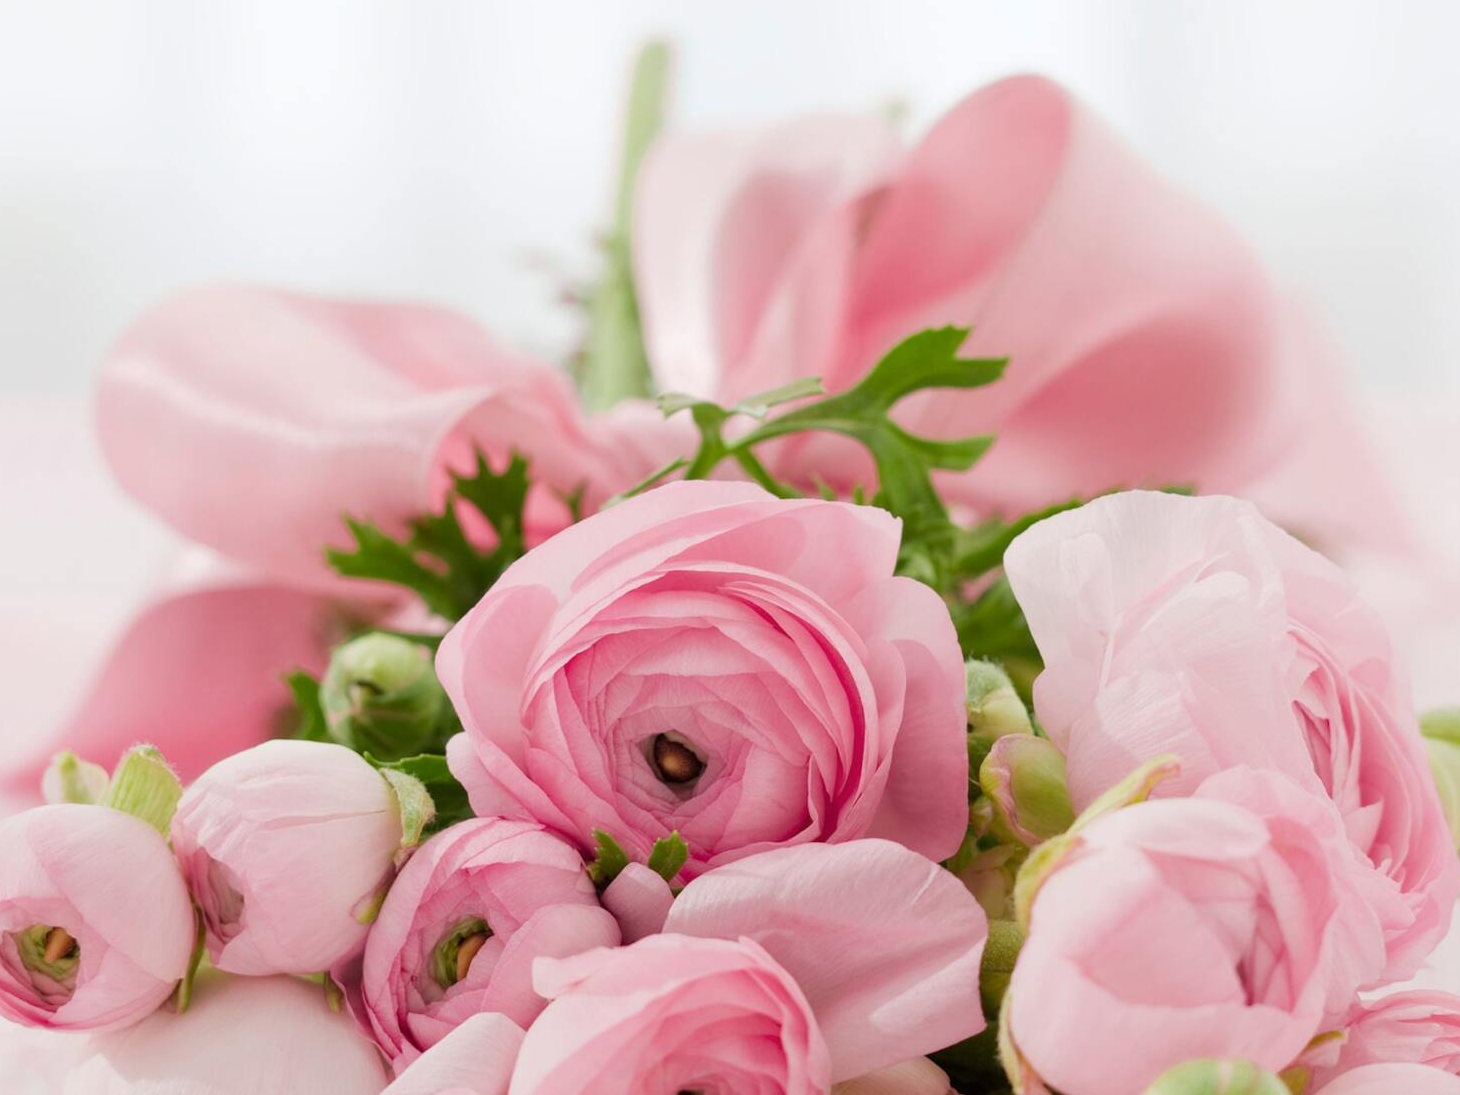 Floristry arrangements, Bridal Services, Weddings, BouquetsInterior Plant Design,